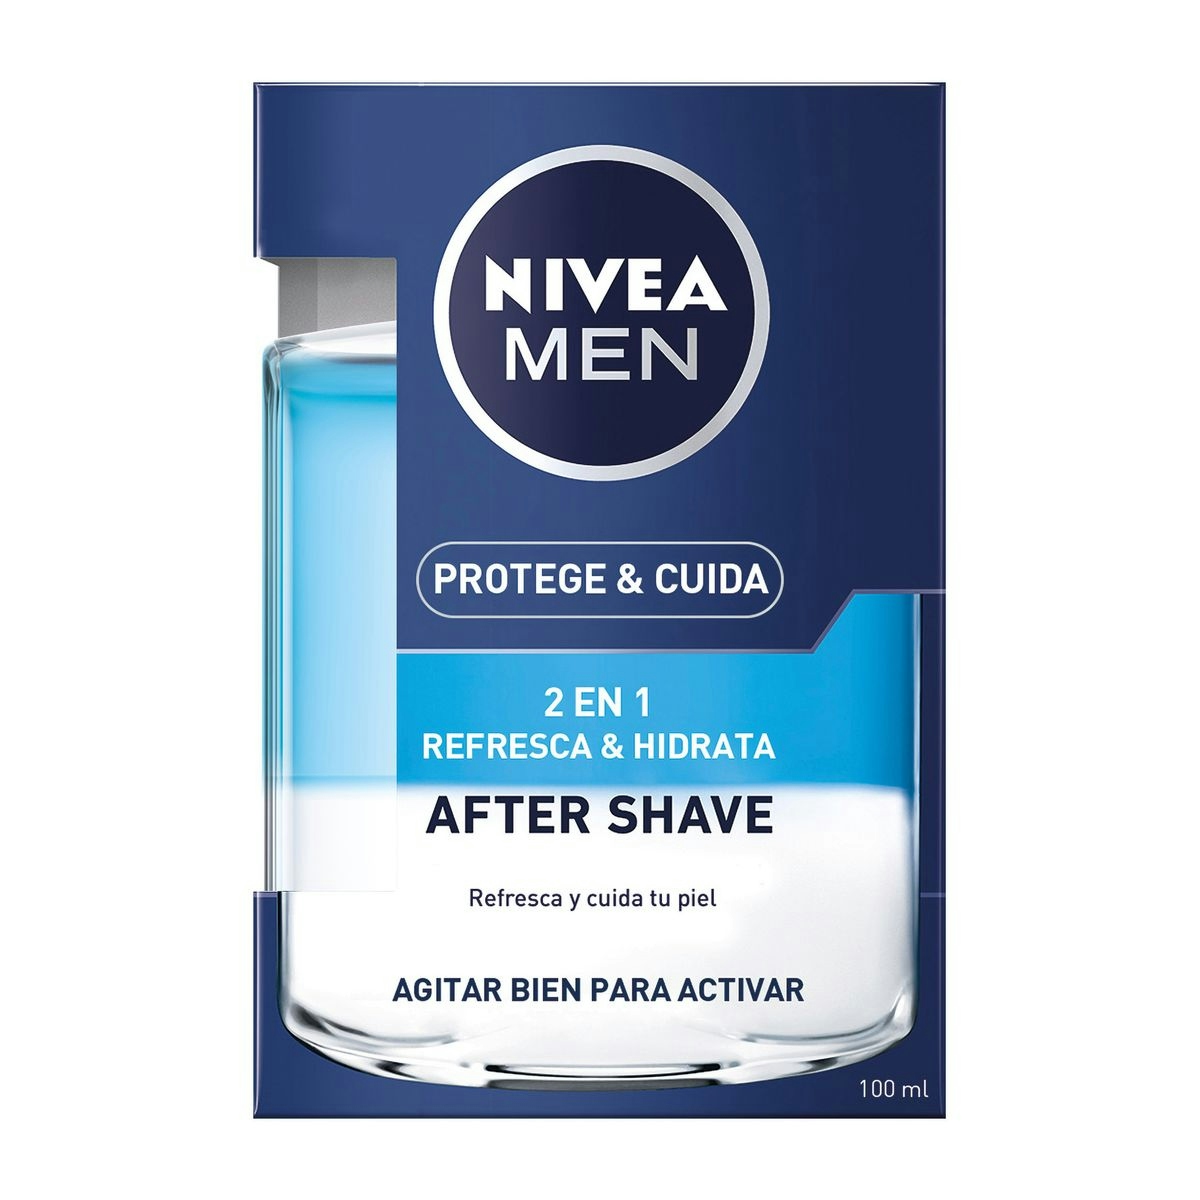 Loción after shave NIVEA Men 2 en 1 protege&cuida bote 100 ml